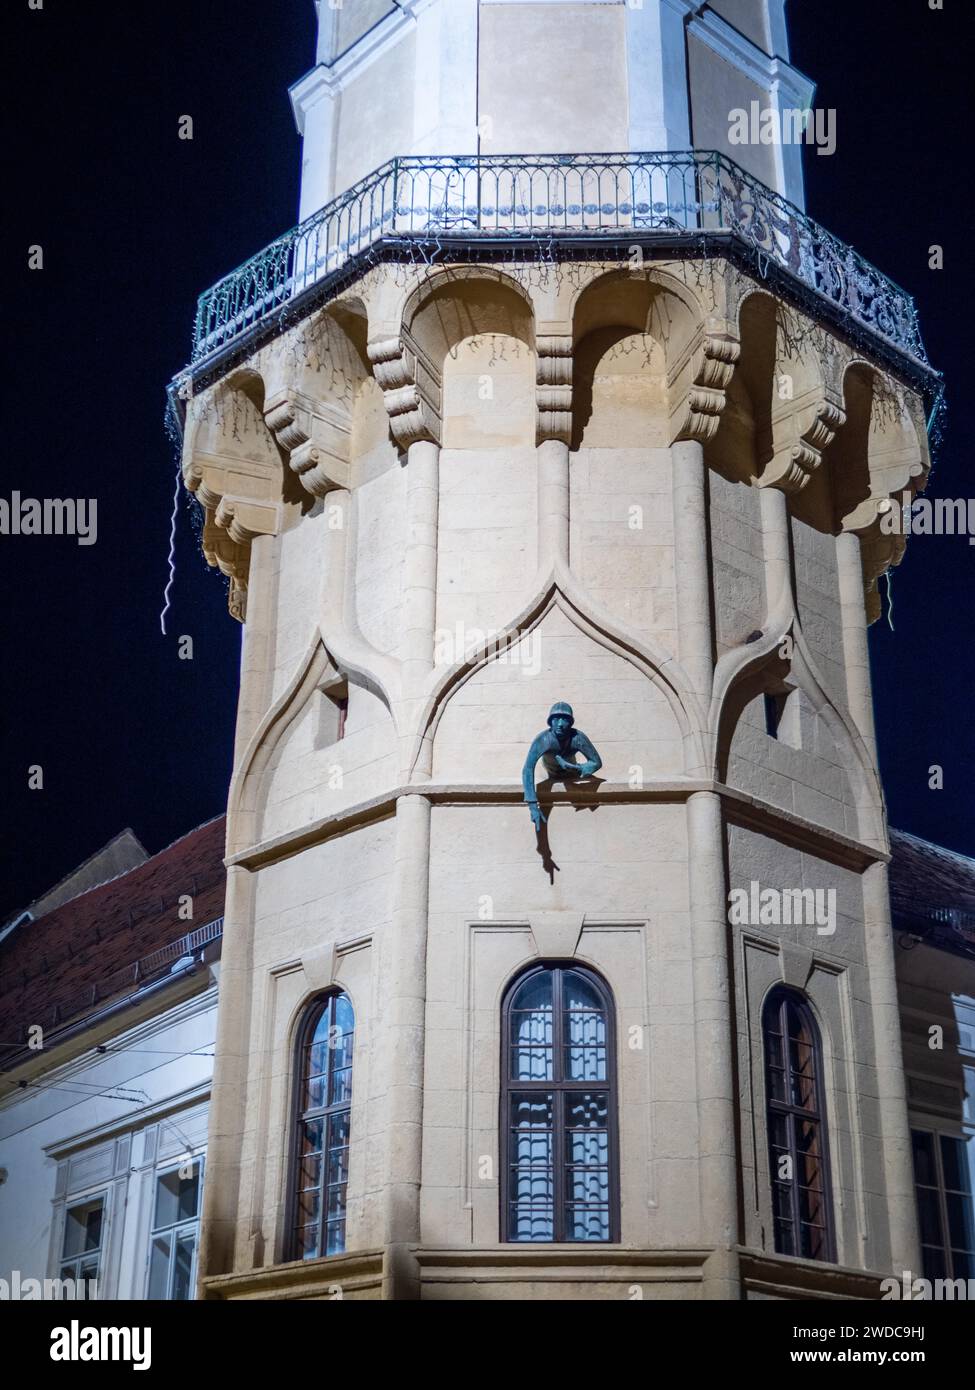 Der Caller, ein bronzener Krieger, Halbfigur, Rathausturm, Nachtschuss, Bad Radkersburg, Steiermark, Österreich Stockfoto